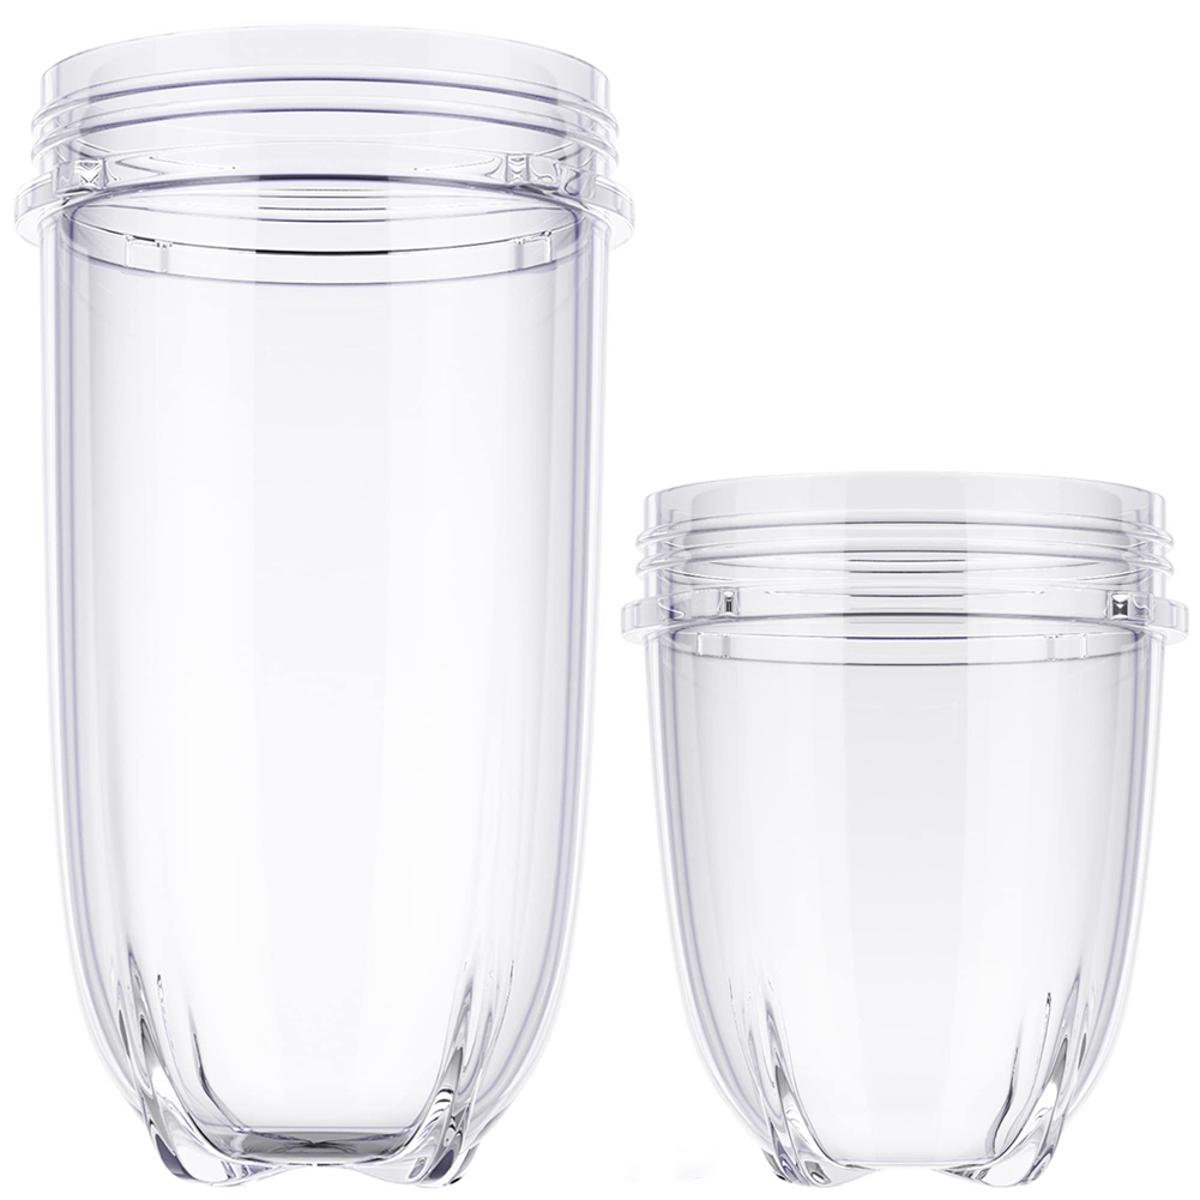 Oster 178891-000-000 Glass Blender Jar Fits Oster Pro 1200 Blenders Only